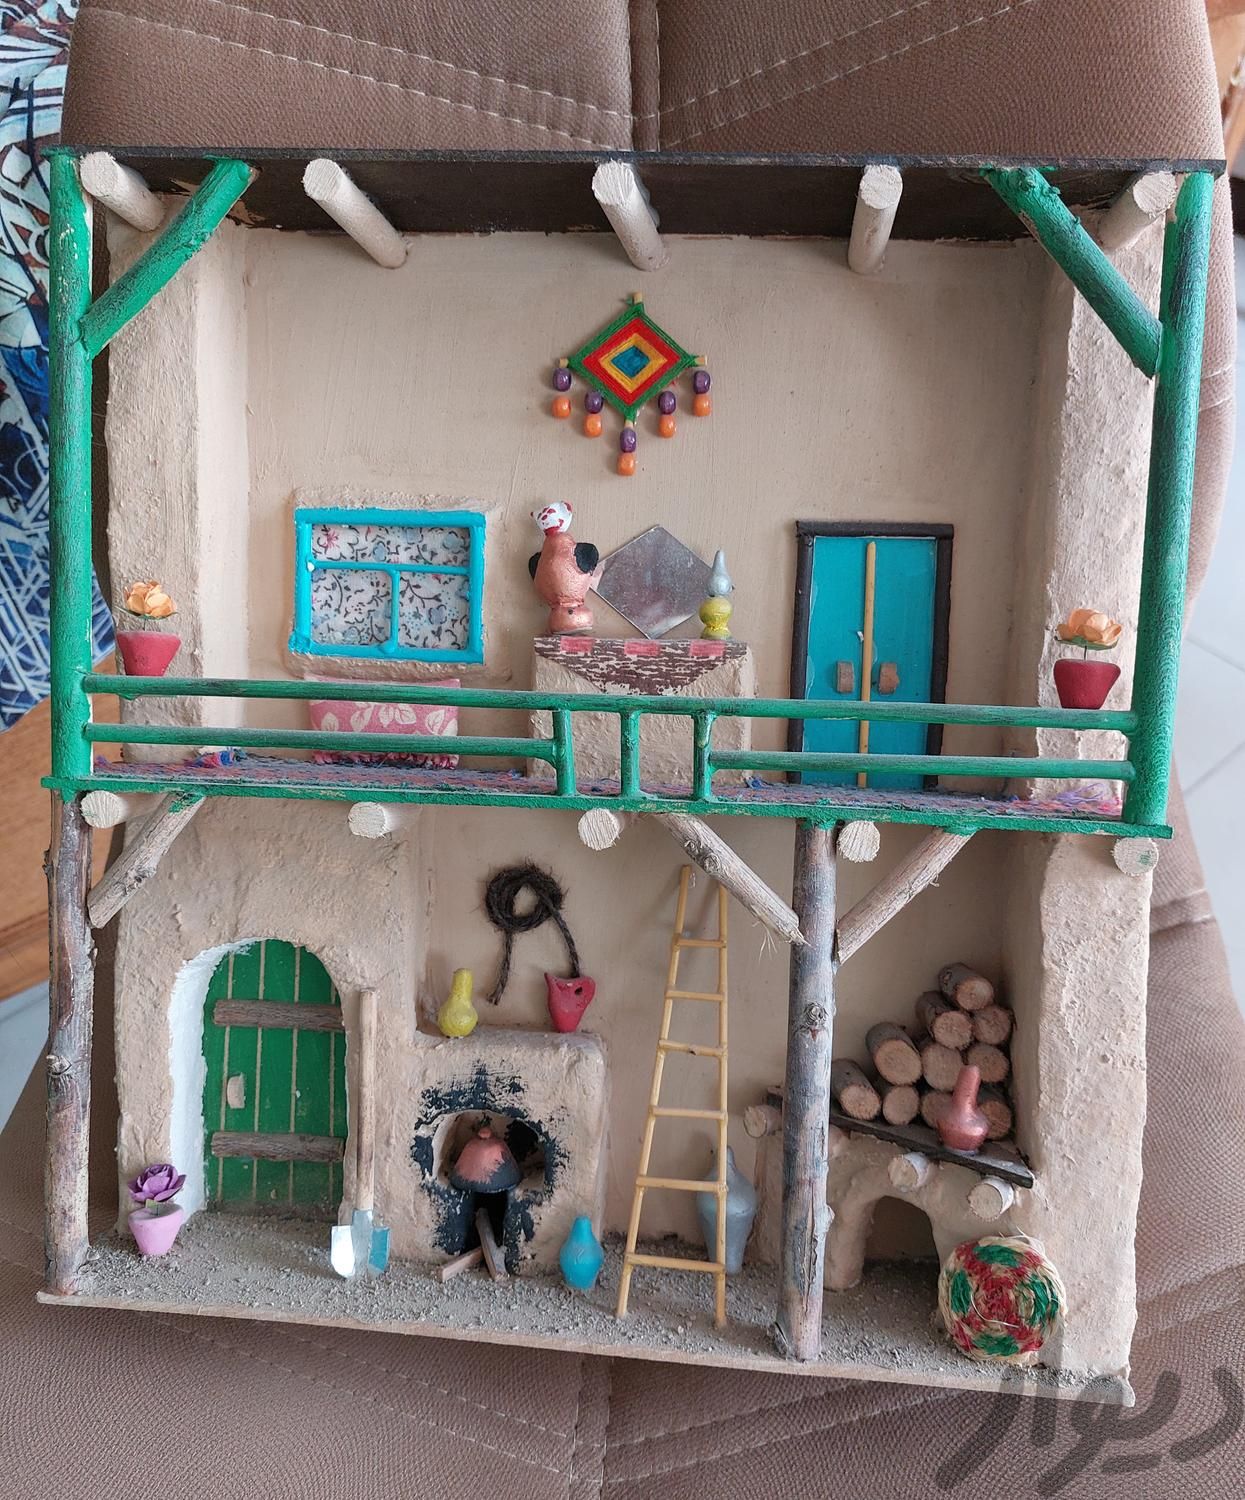 تابلوی سه بعدی  خانه دو طبقه روستایی  و زن روستایی|تابلو، نقاشی و عکس|تهران, دهکده المپیک|دیوار